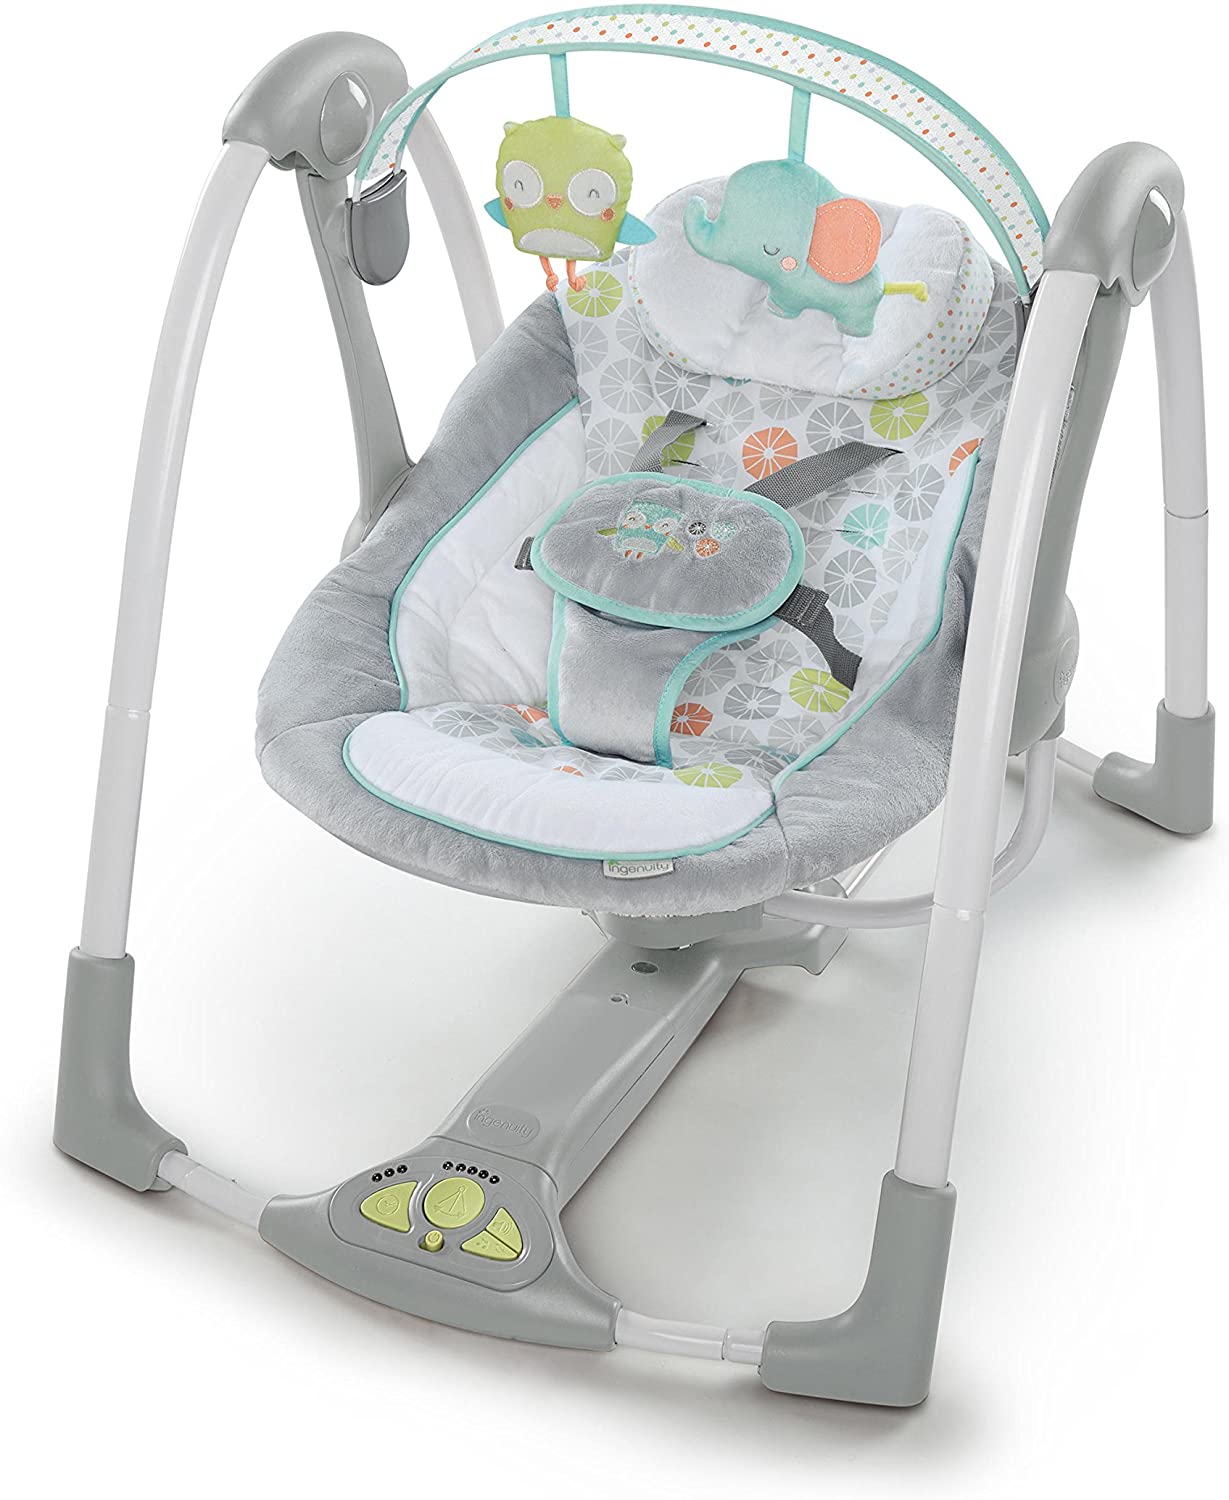 GalPat Baby Hamaca Bebé Plegable + Arco de Juegos + Mochila Transporte -  Balanceo Natural - Ergonómica - Tejido Transpirable Suave y Antialérgico -  3